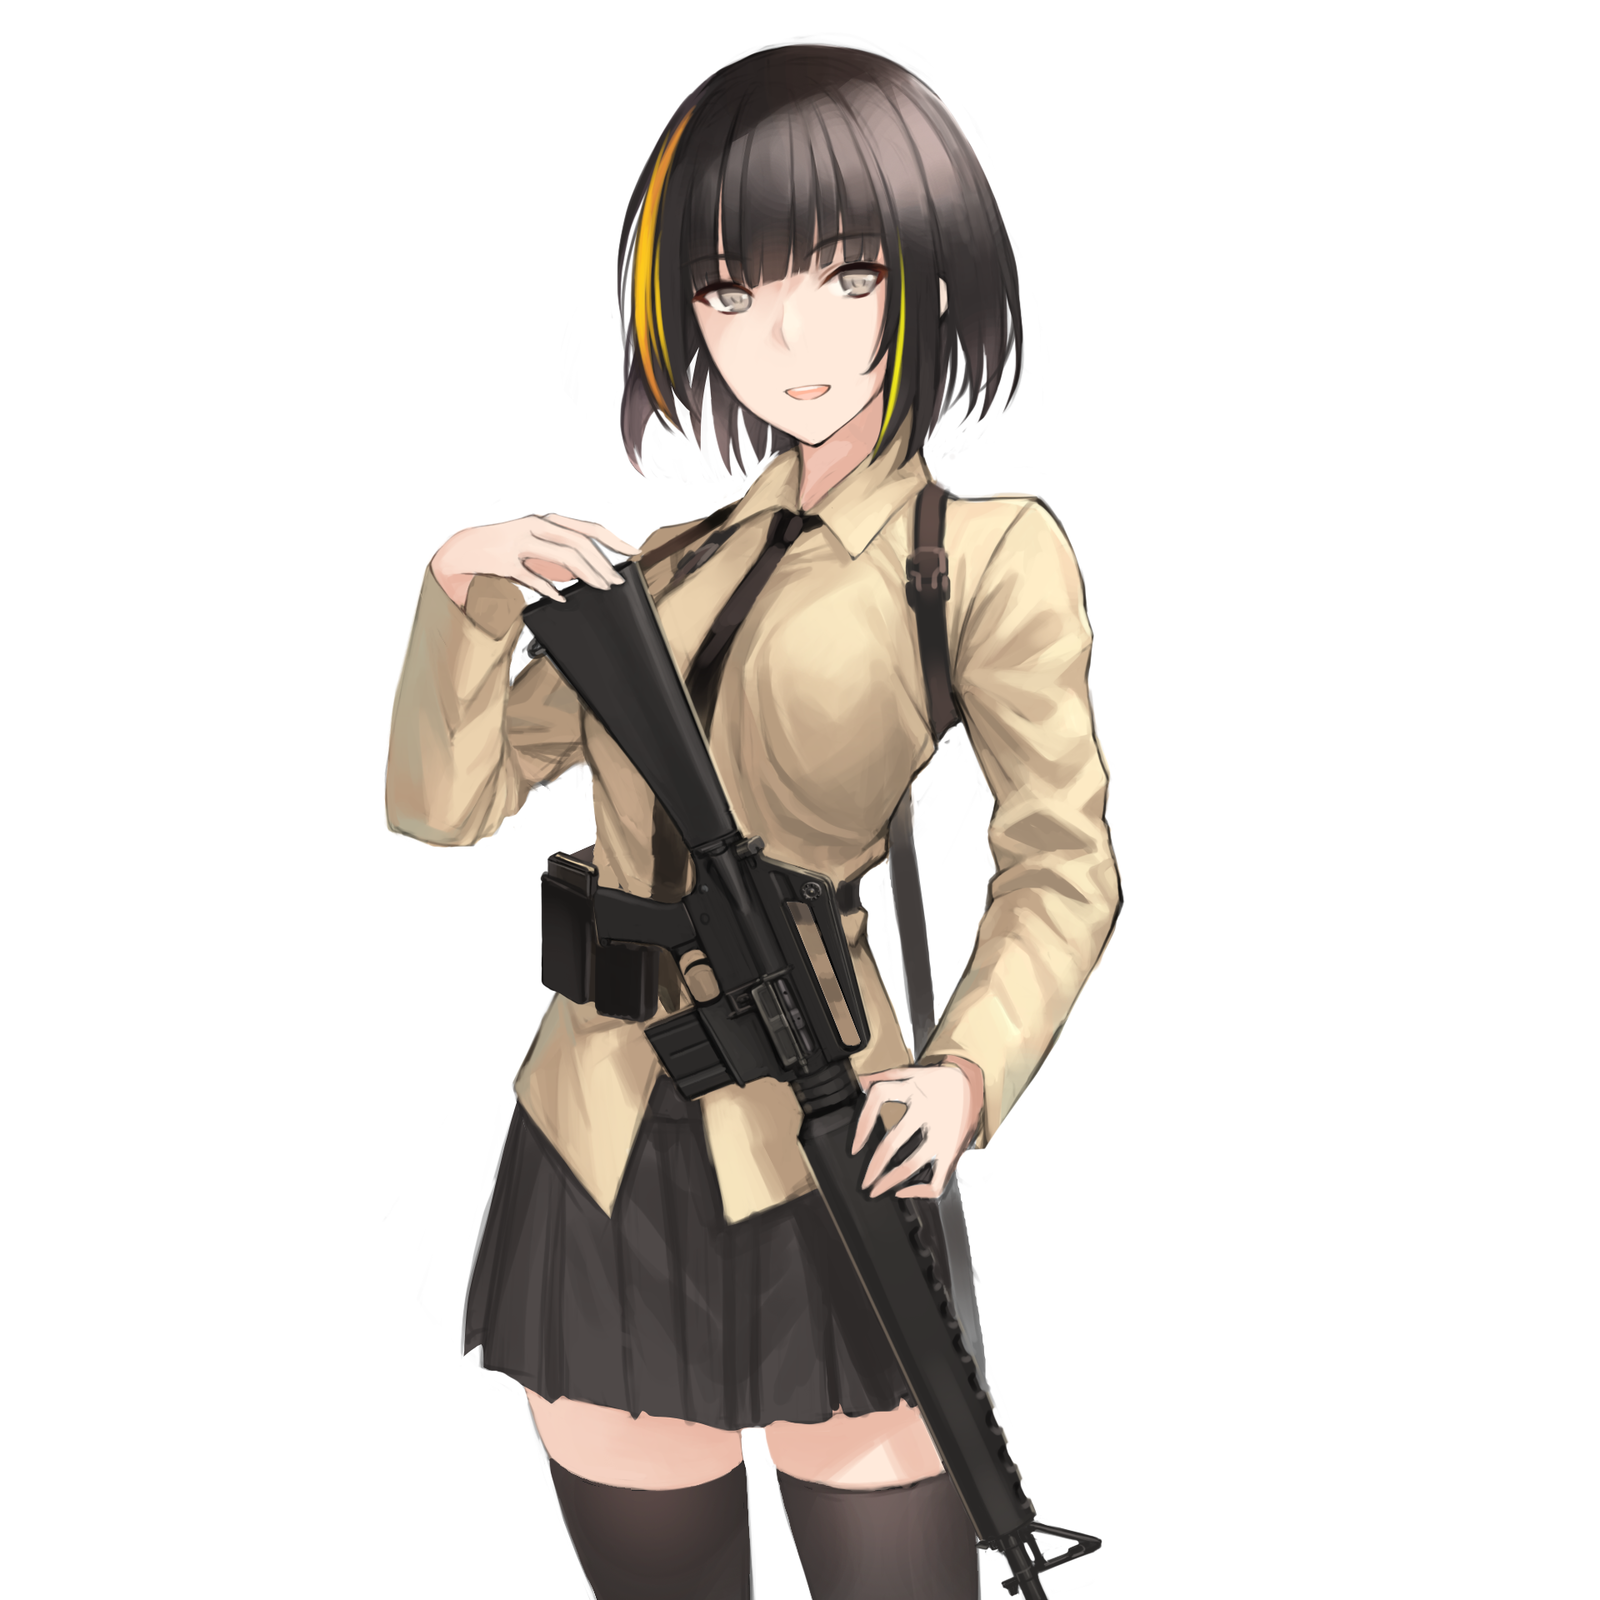 M16A1 (Girls' Frontline) - Anime, Art, Anime art, Girls frontline, M16a1